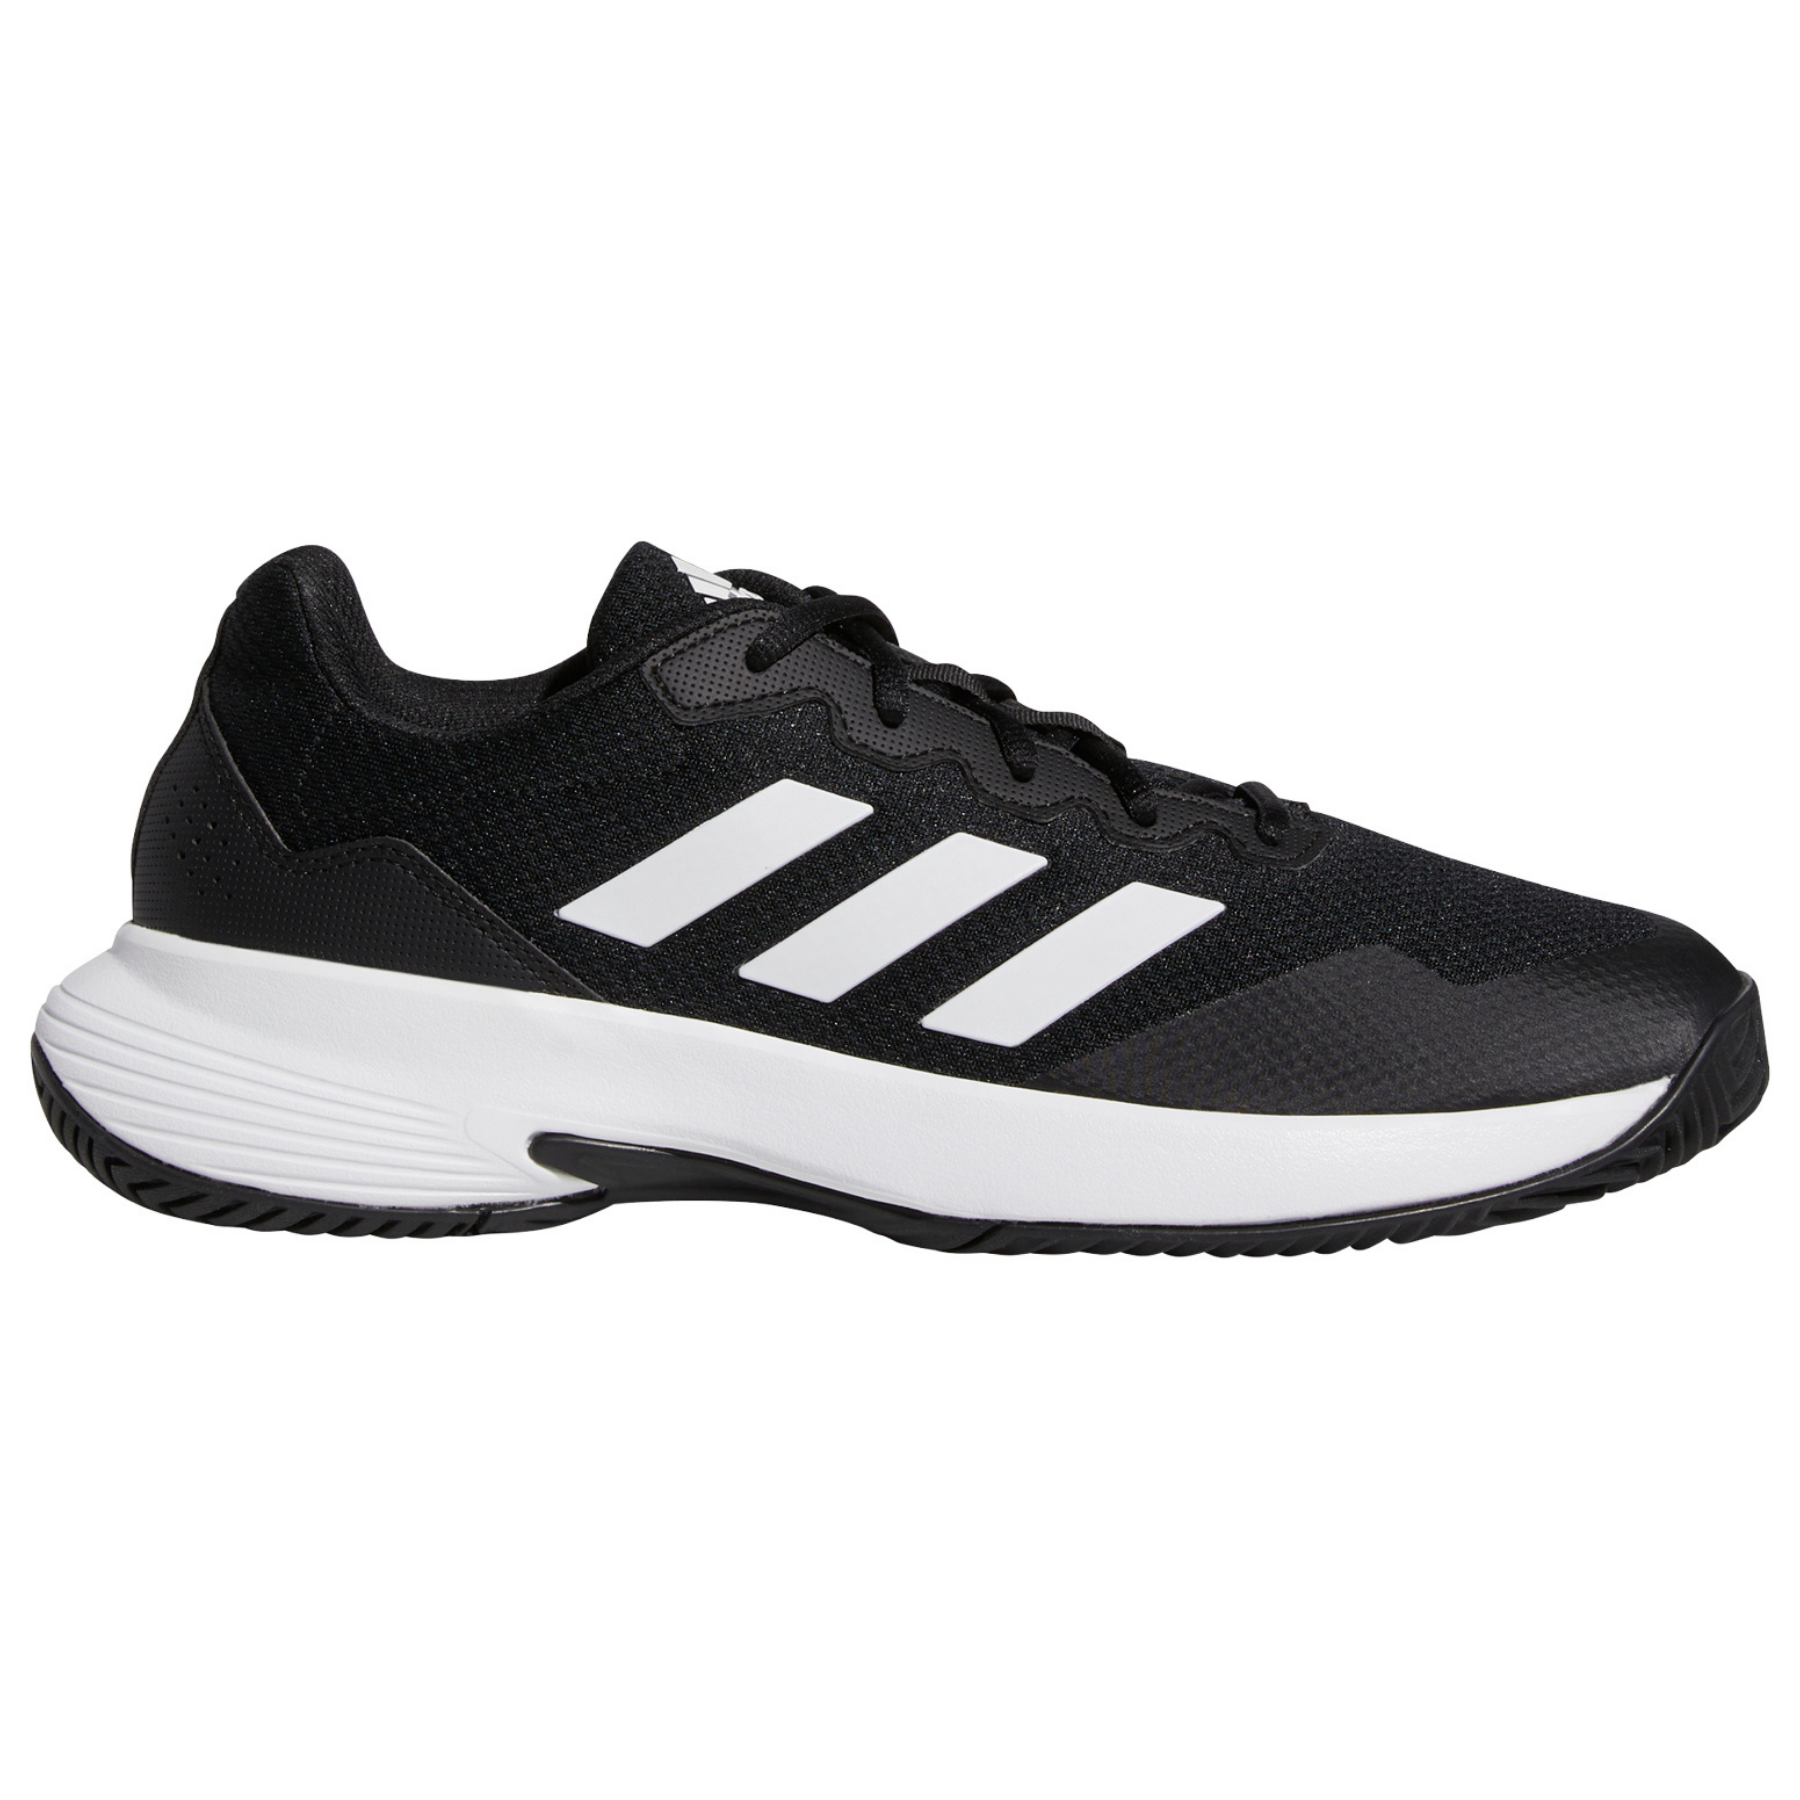 Adidas Game Court 2 Men Tennis Shoes - Core Black/Cloud White/Core Bla ...